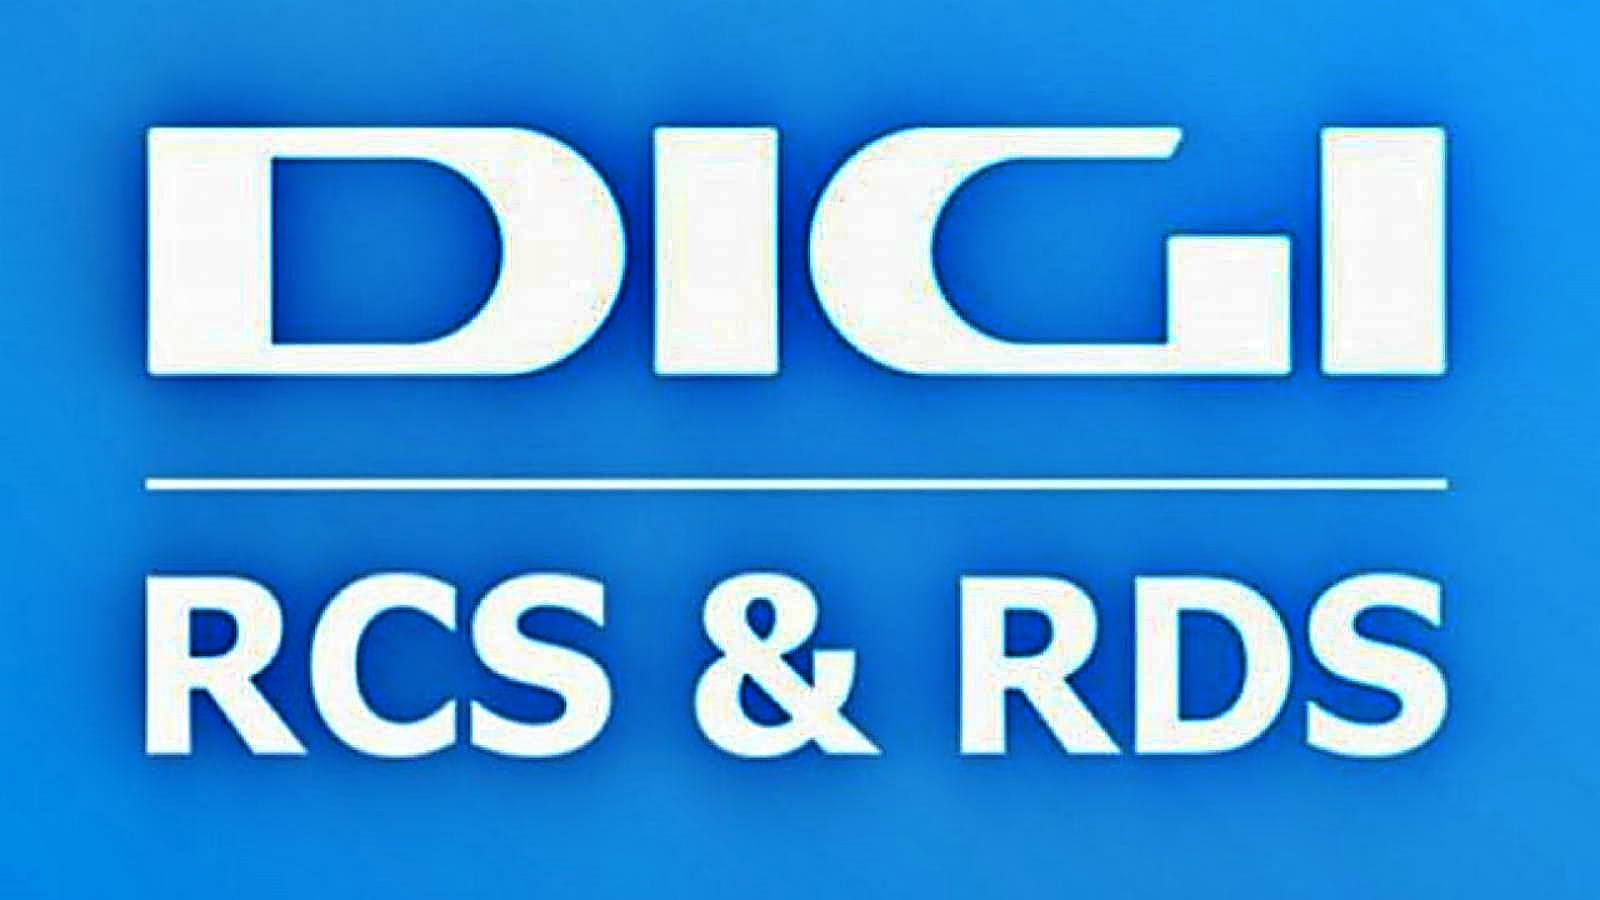 Oficjalne ogłoszenie DIGI RCS & RDS OGROMNE MILIONY rumuńskich klientów